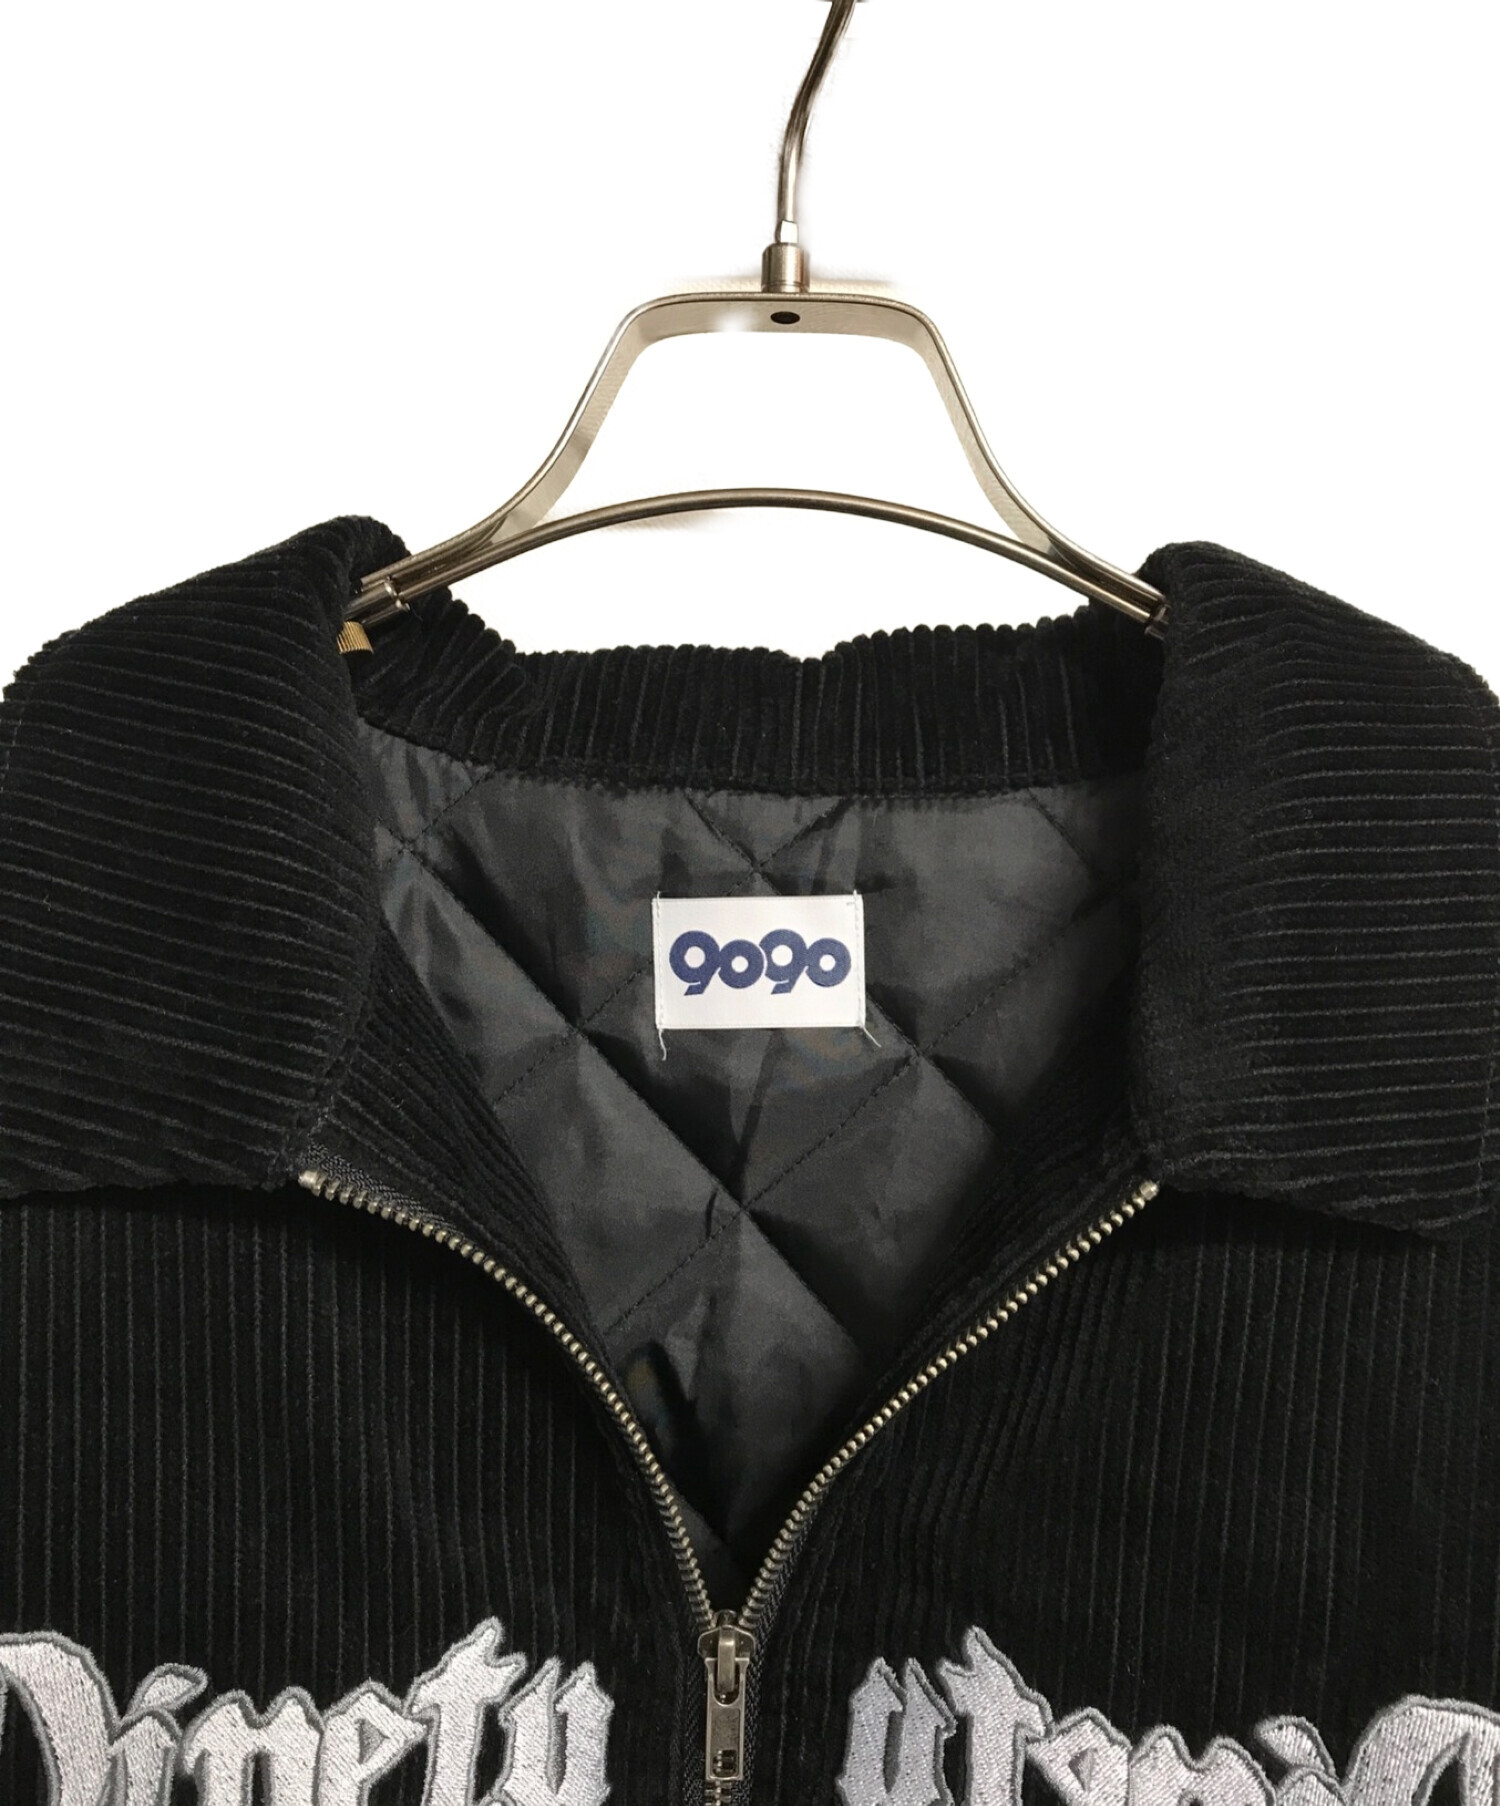 9090 (ナインティナインティ) コーデュロイジャケット ブラック サイズ:L